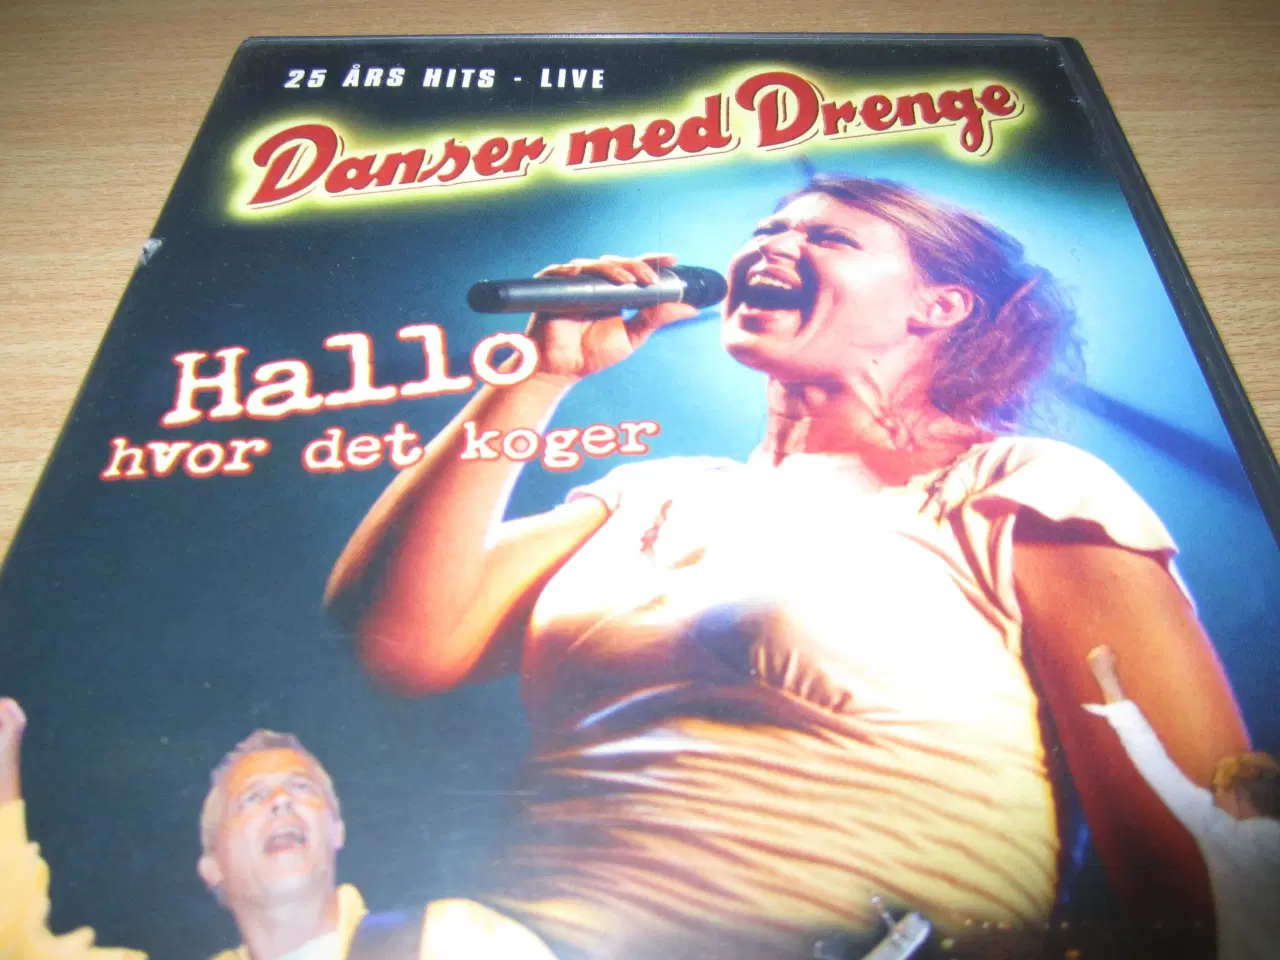 Billede 1 - DANSER MED DRENGE 25 års hits - Live.